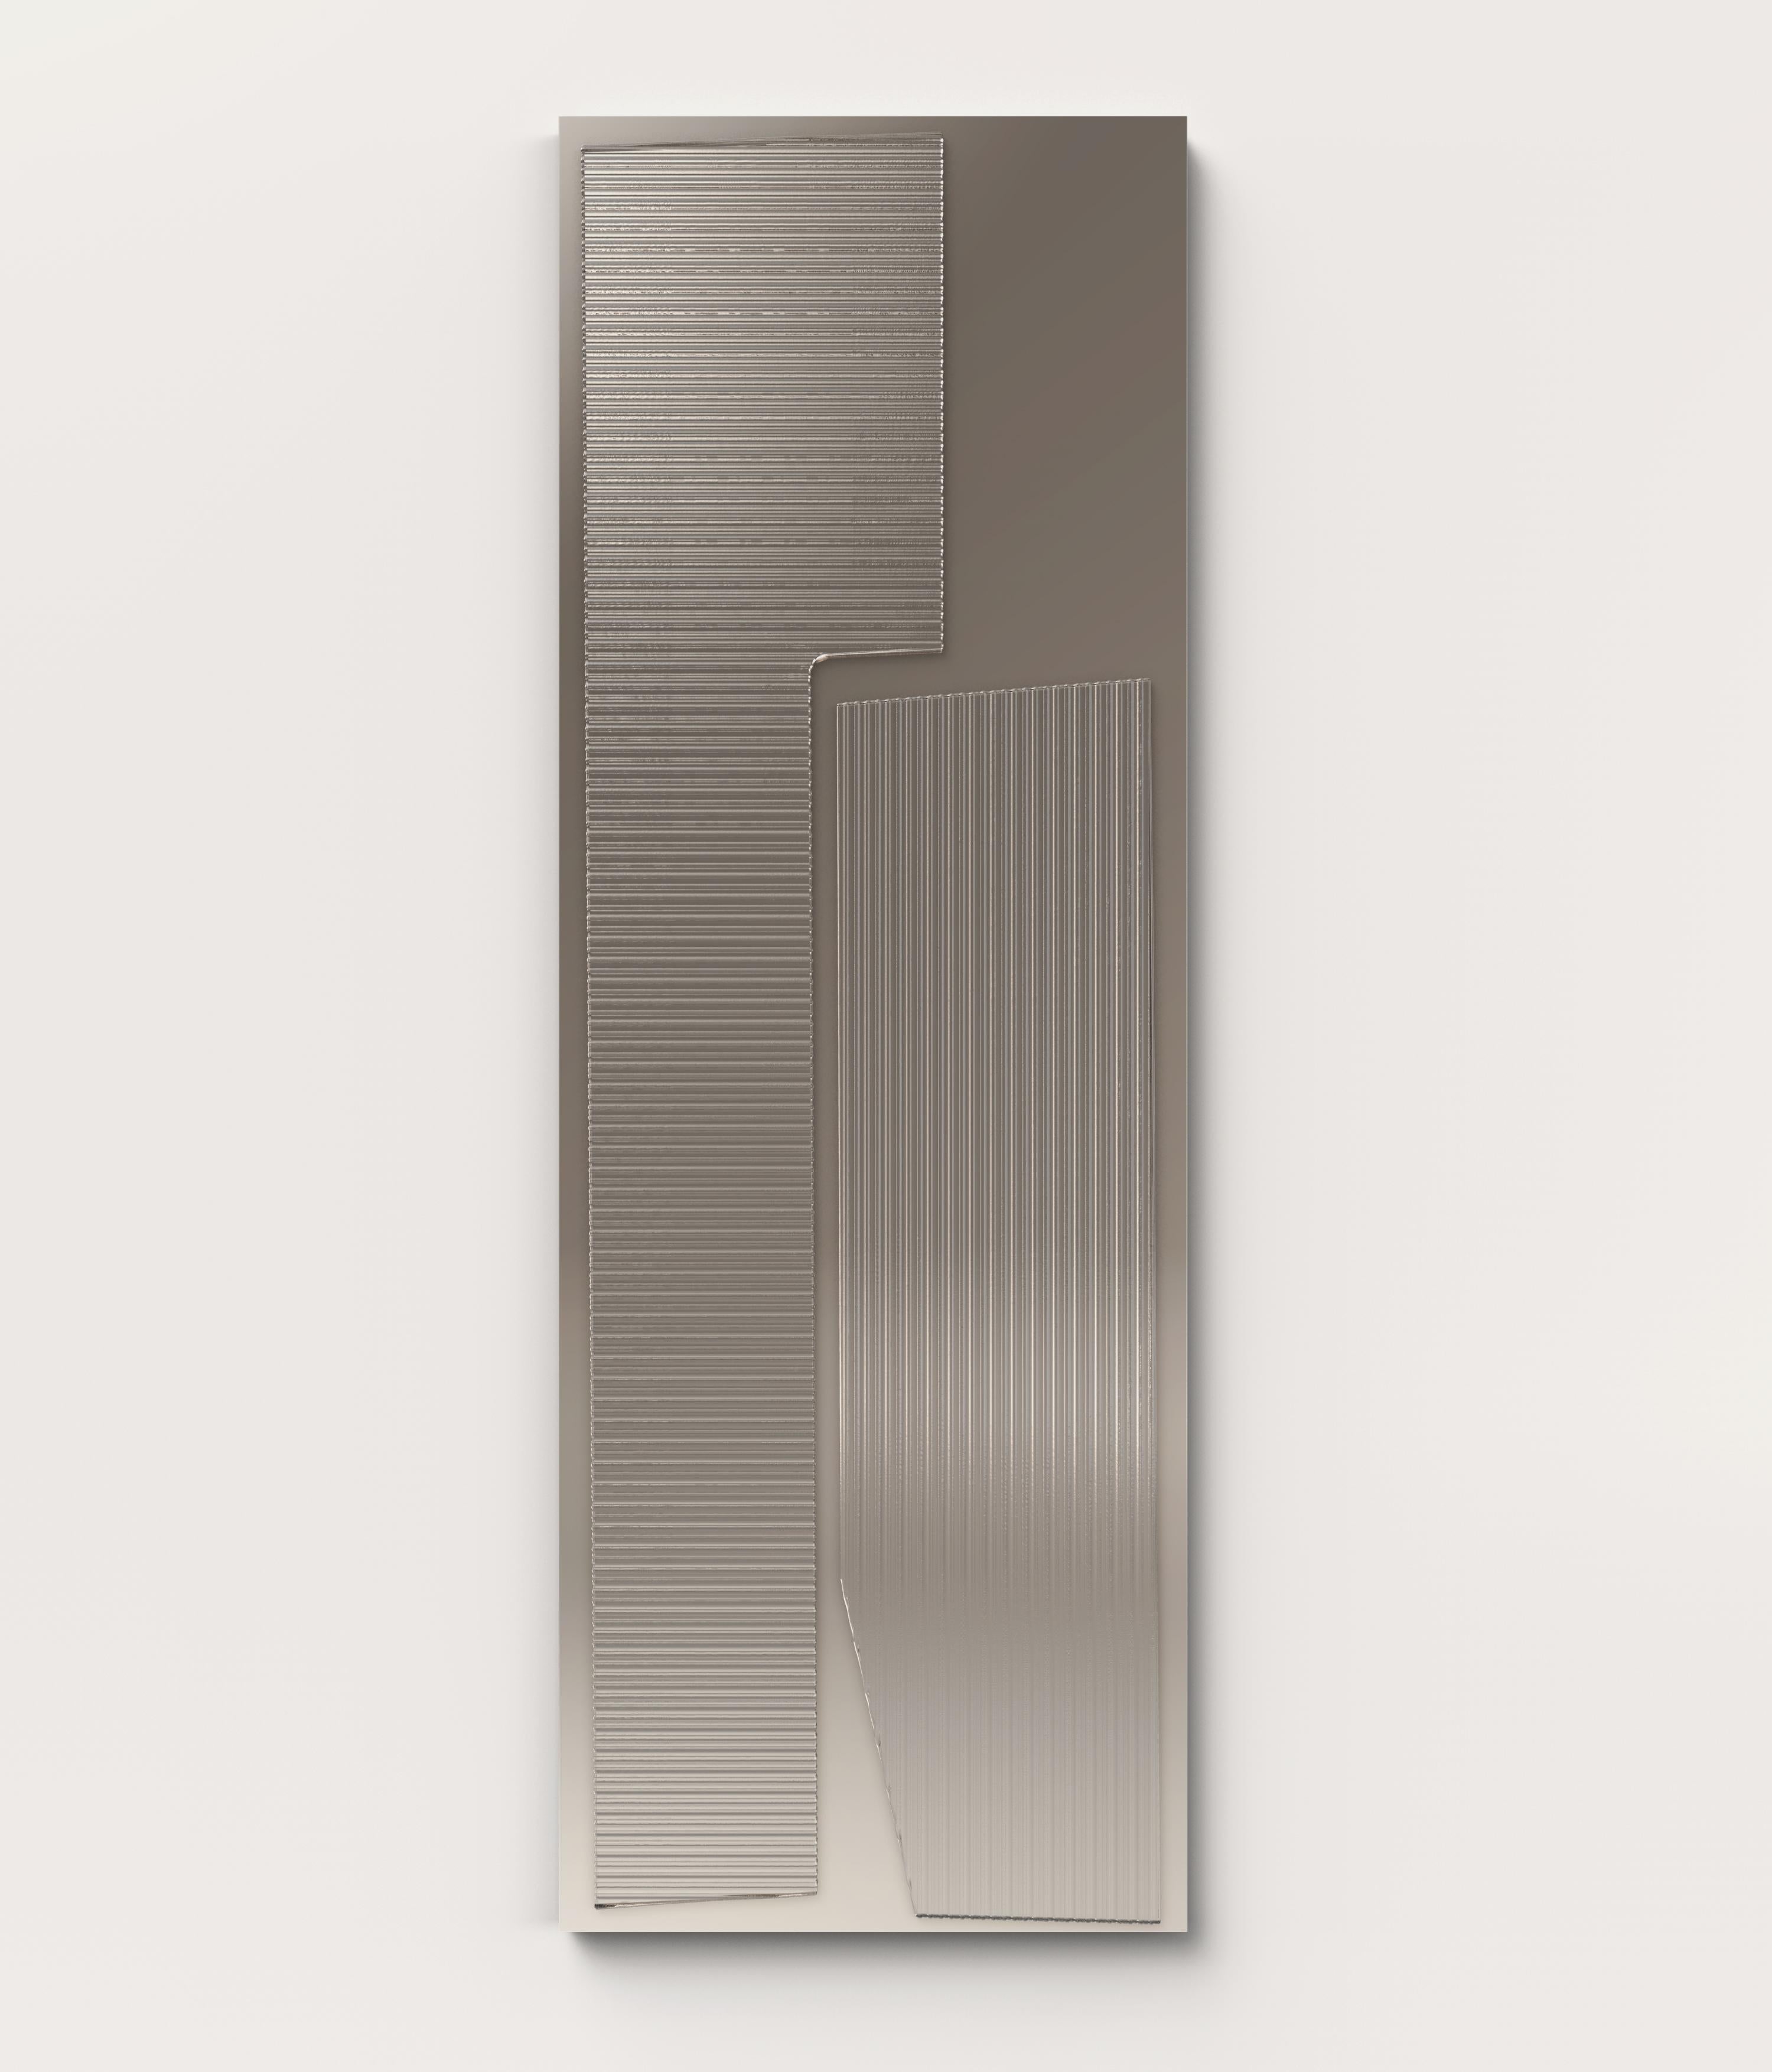 Italian Contemporary LimitedEdition Glass Bronzed Mirror, Prisma V2 by Edizione Limitata